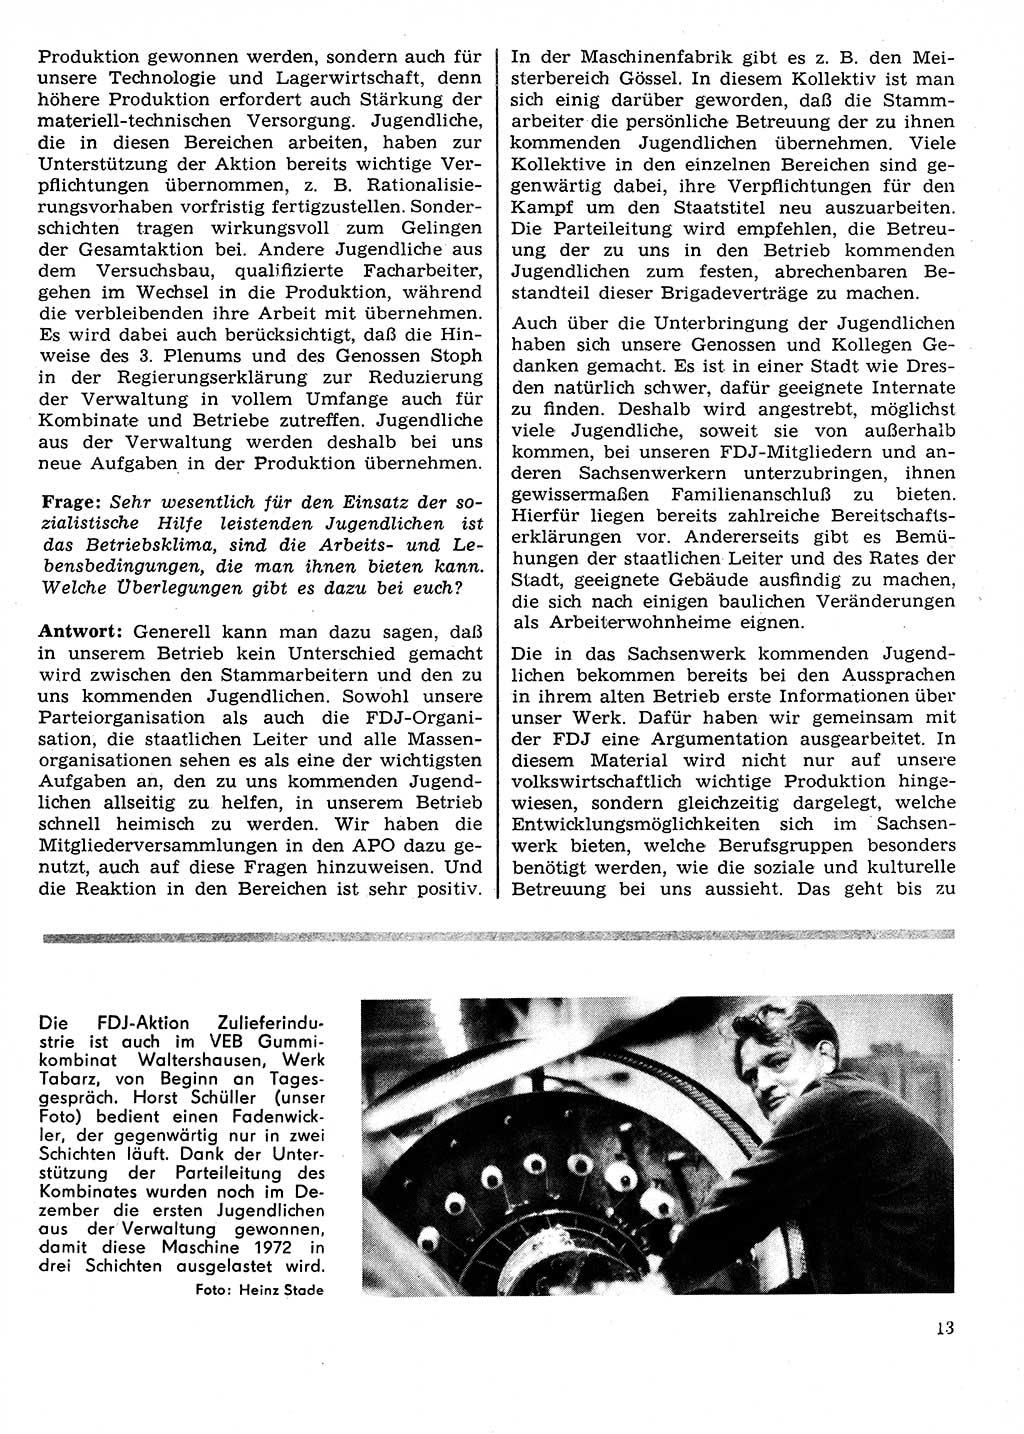 Neuer Weg (NW), Organ des Zentralkomitees (ZK) der SED (Sozialistische Einheitspartei Deutschlands) für Fragen des Parteilebens, 27. Jahrgang [Deutsche Demokratische Republik (DDR)] 1972, Seite 13 (NW ZK SED DDR 1972, S. 13)